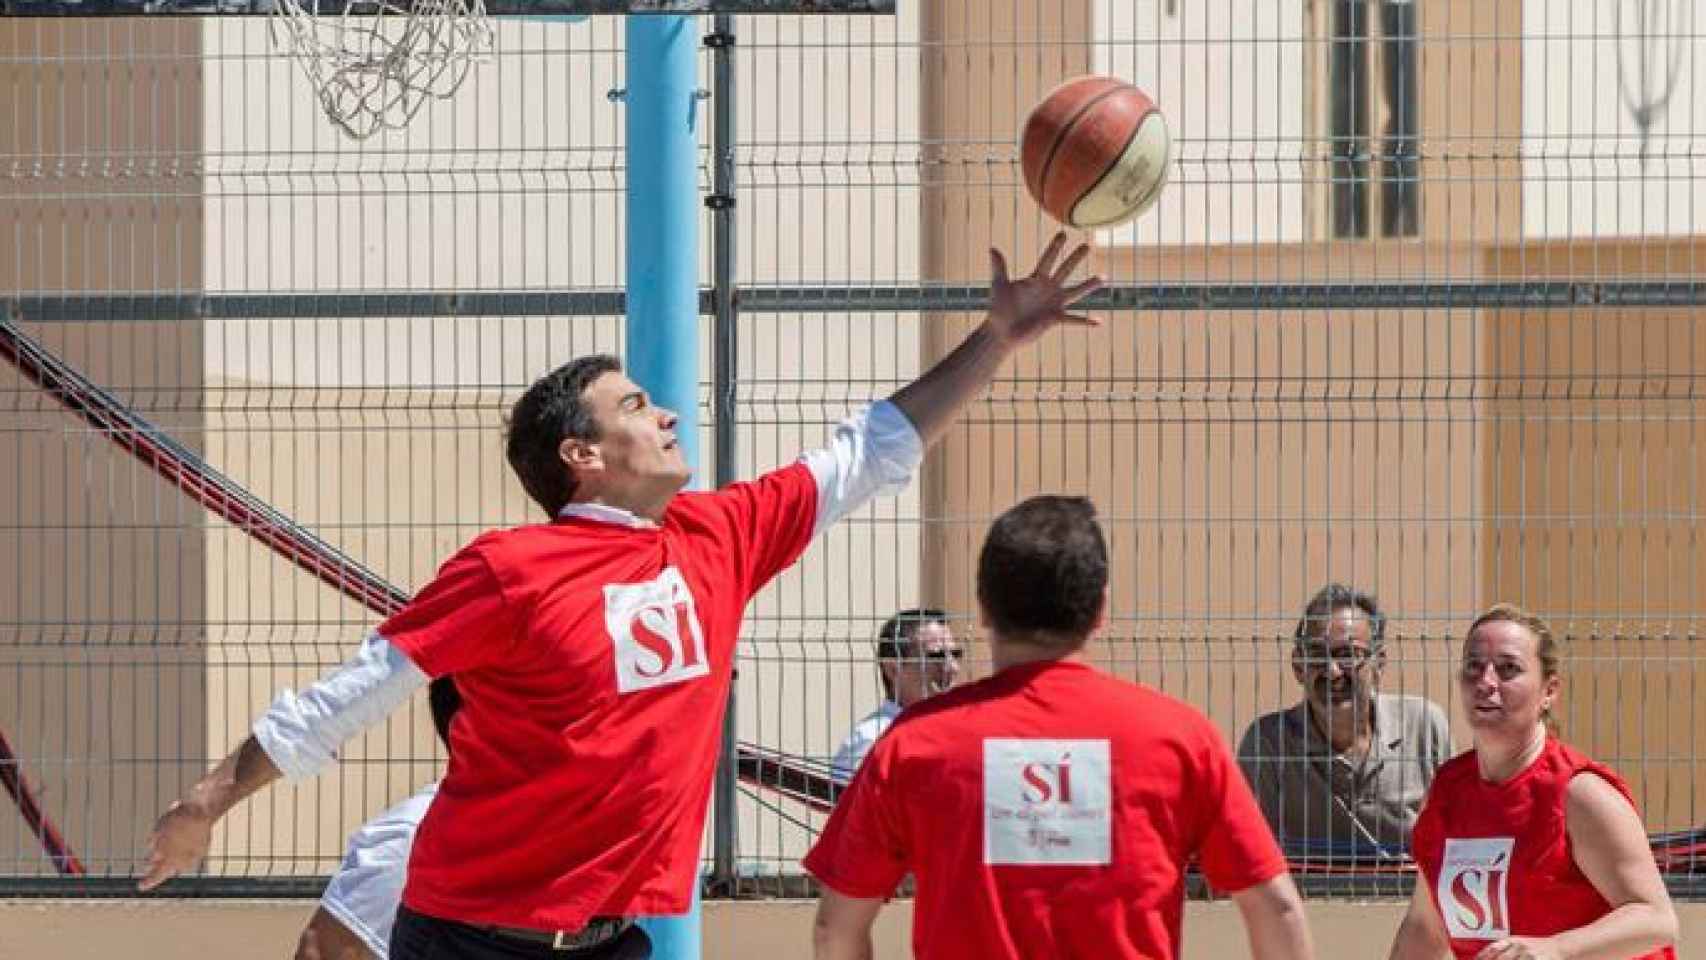 El candidato socialista juega al baloncesto antes del acto del PSOE